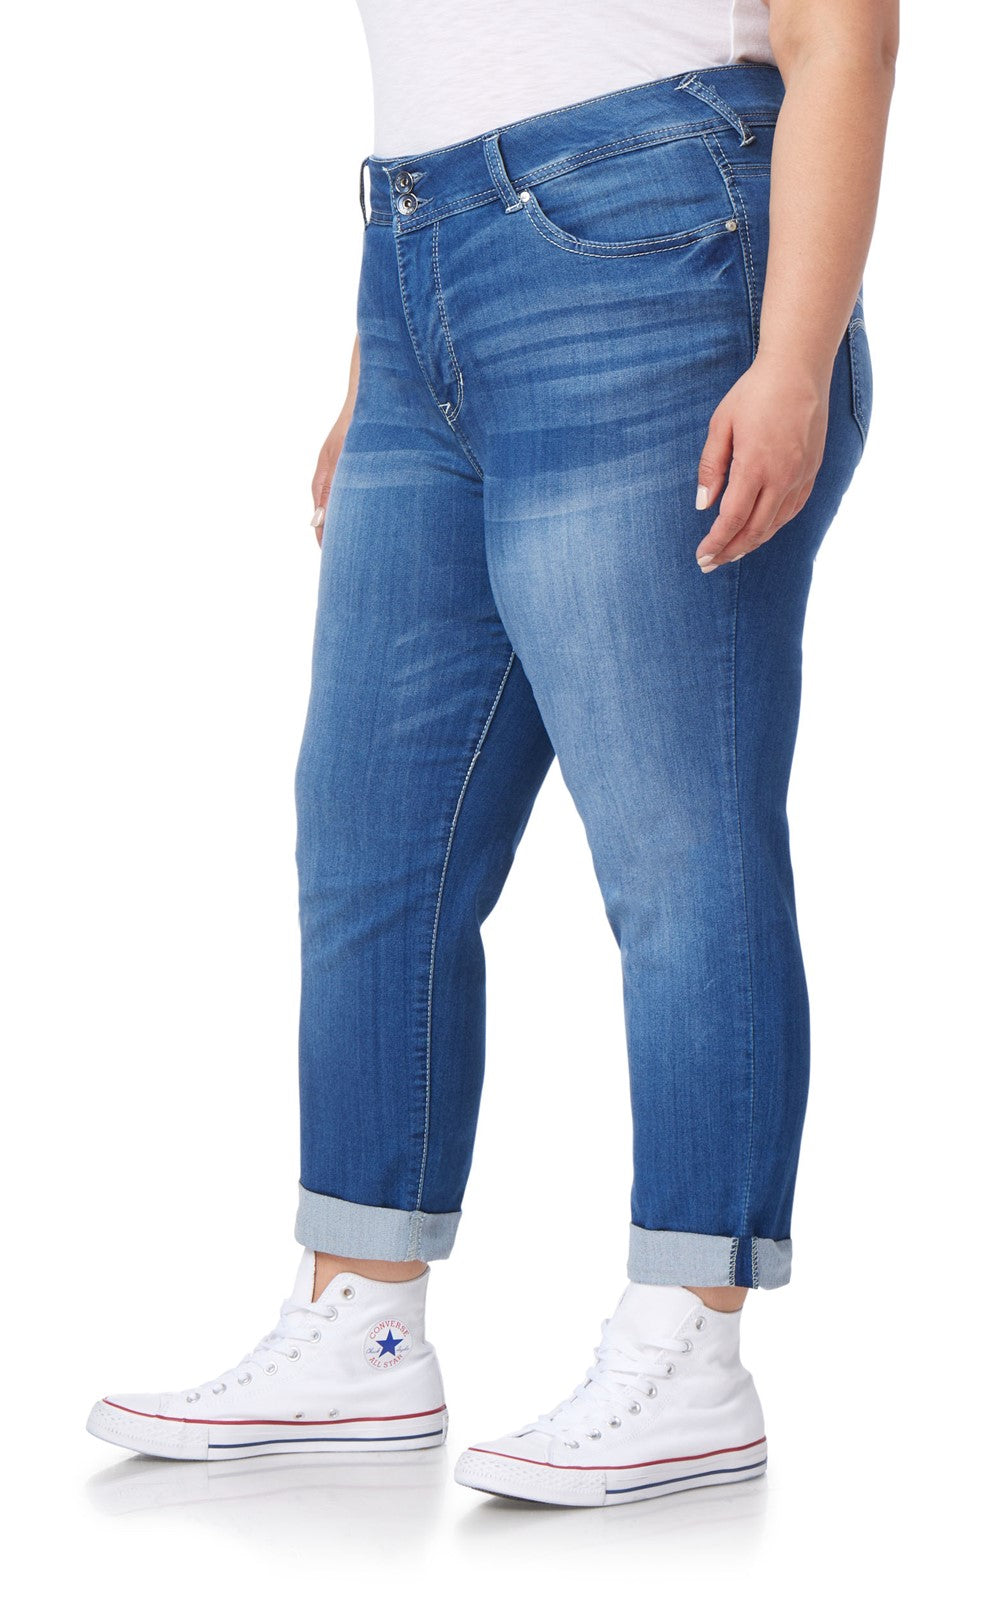 InstaSoft Ultra Fit Skinny Crop Jeans